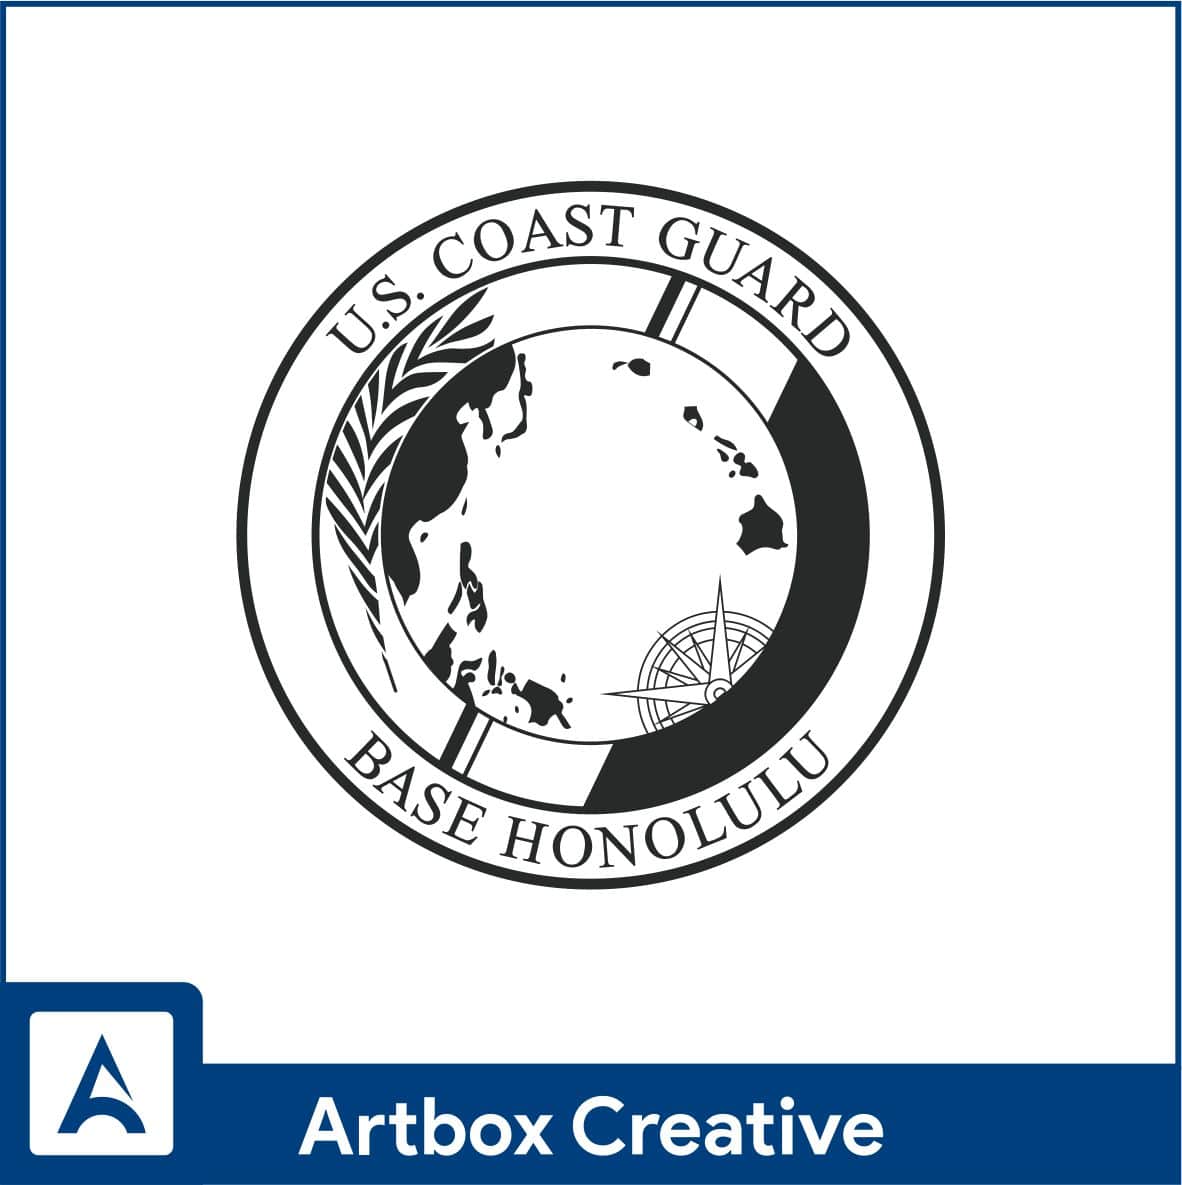 US Coast Guard - ArtBox Creative